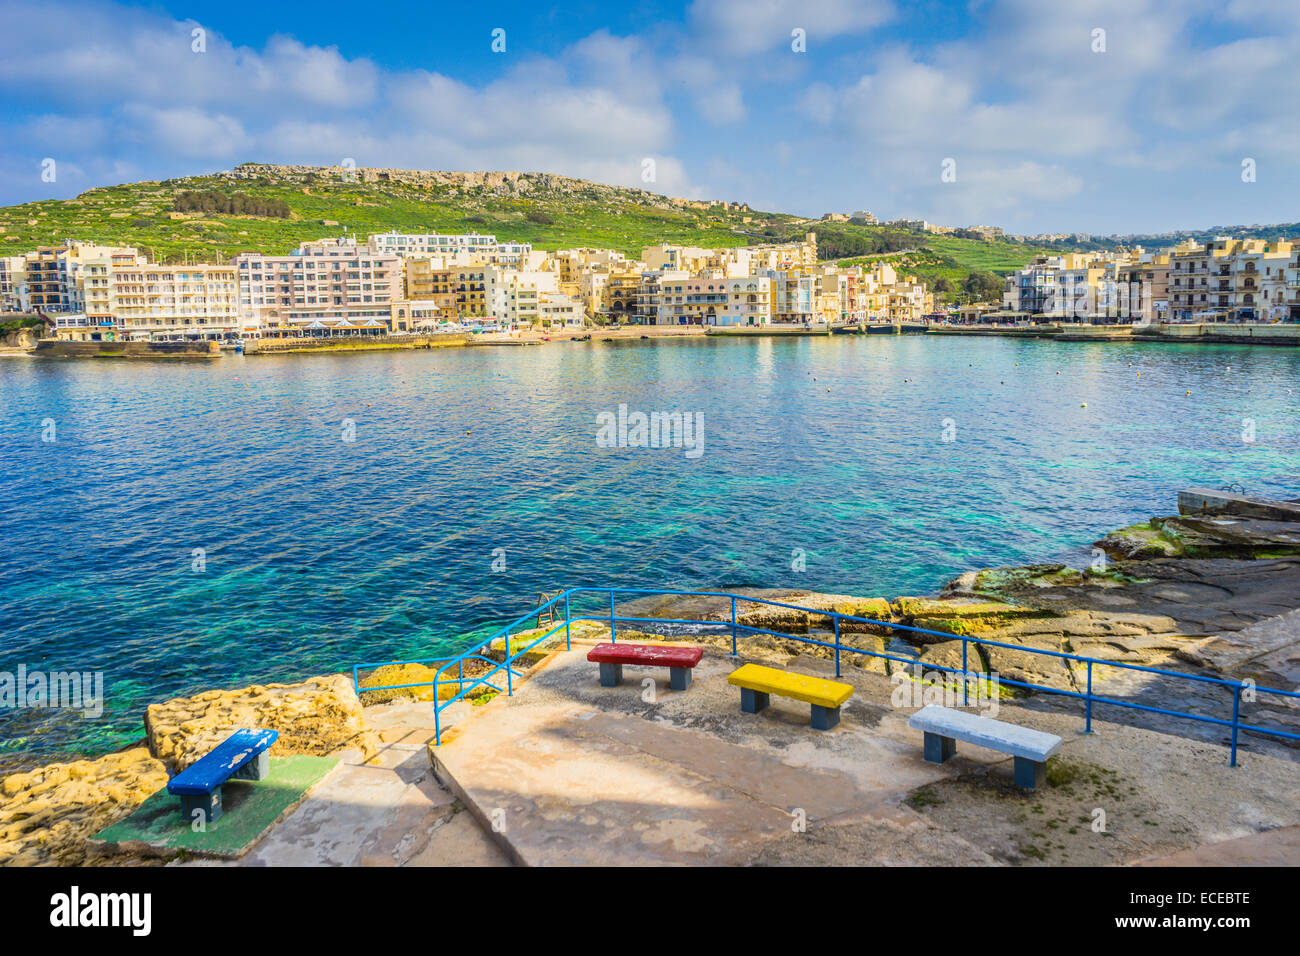 Malte, Gozo, Malta, vue de la ville port avec terrasse en bord de bâtiments au bord de l'eau Banque D'Images